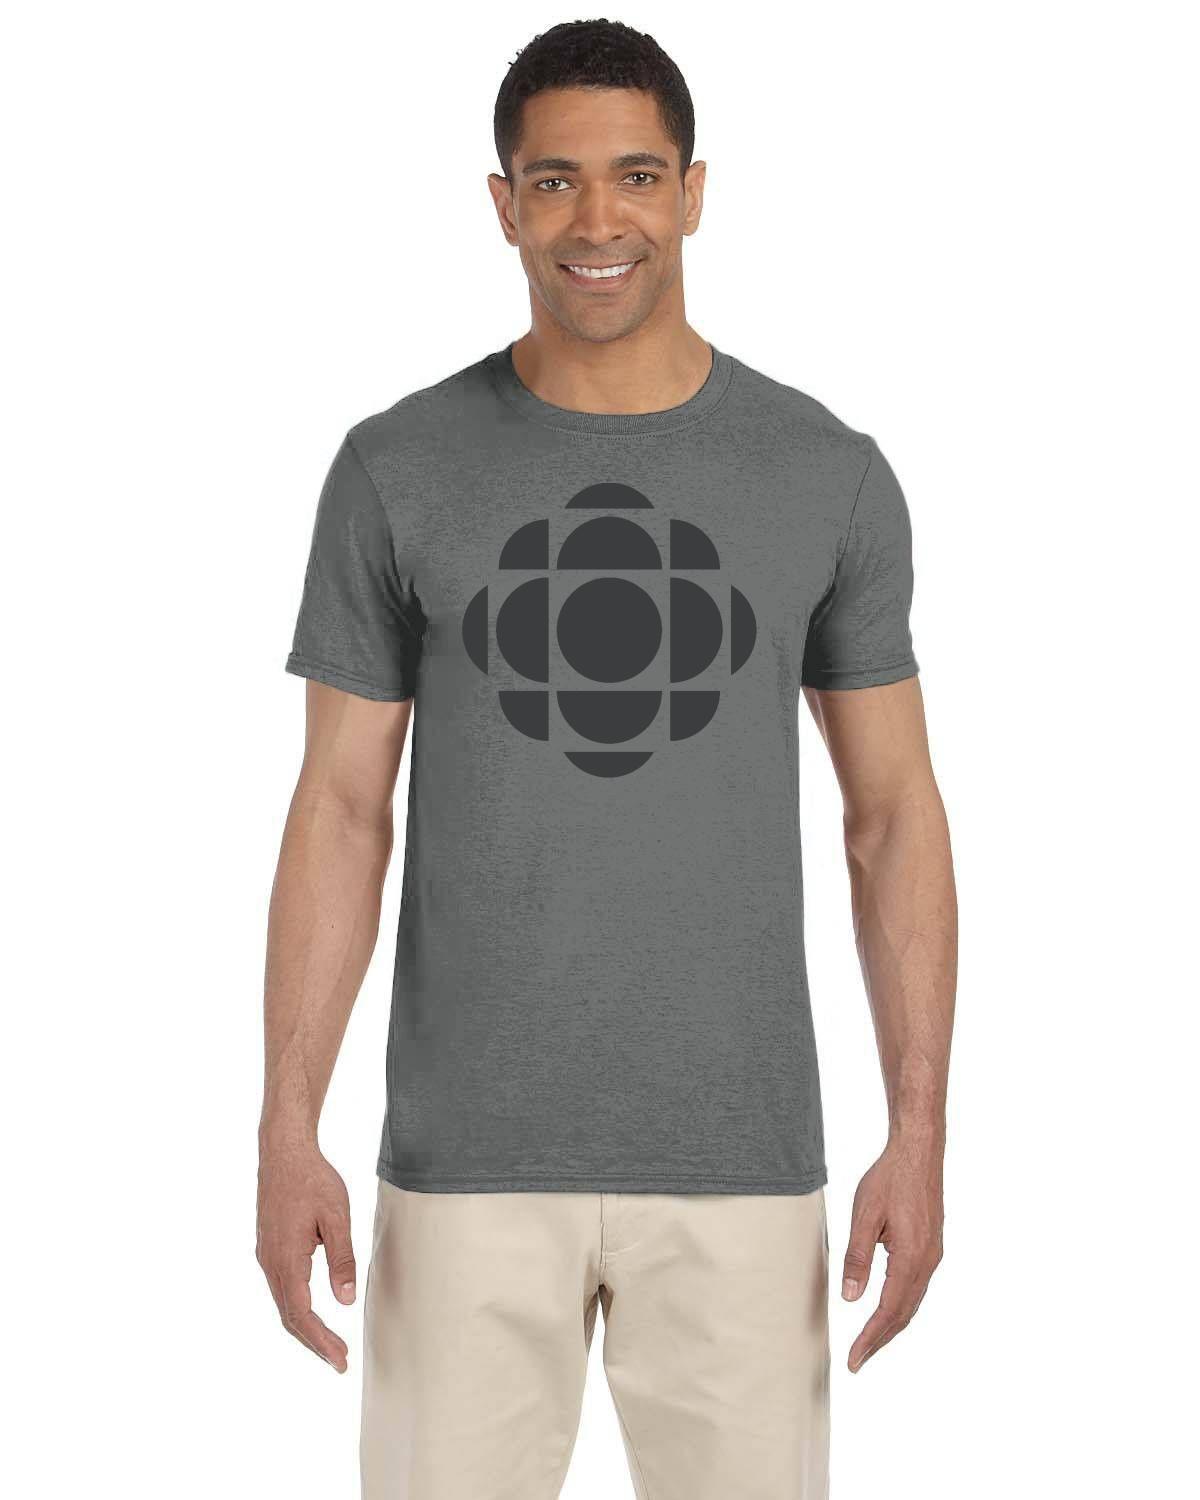 CBC Gem Grey Logo T-Shirt, Canadian Nostalgia, Officially Licensed CBC Apparel